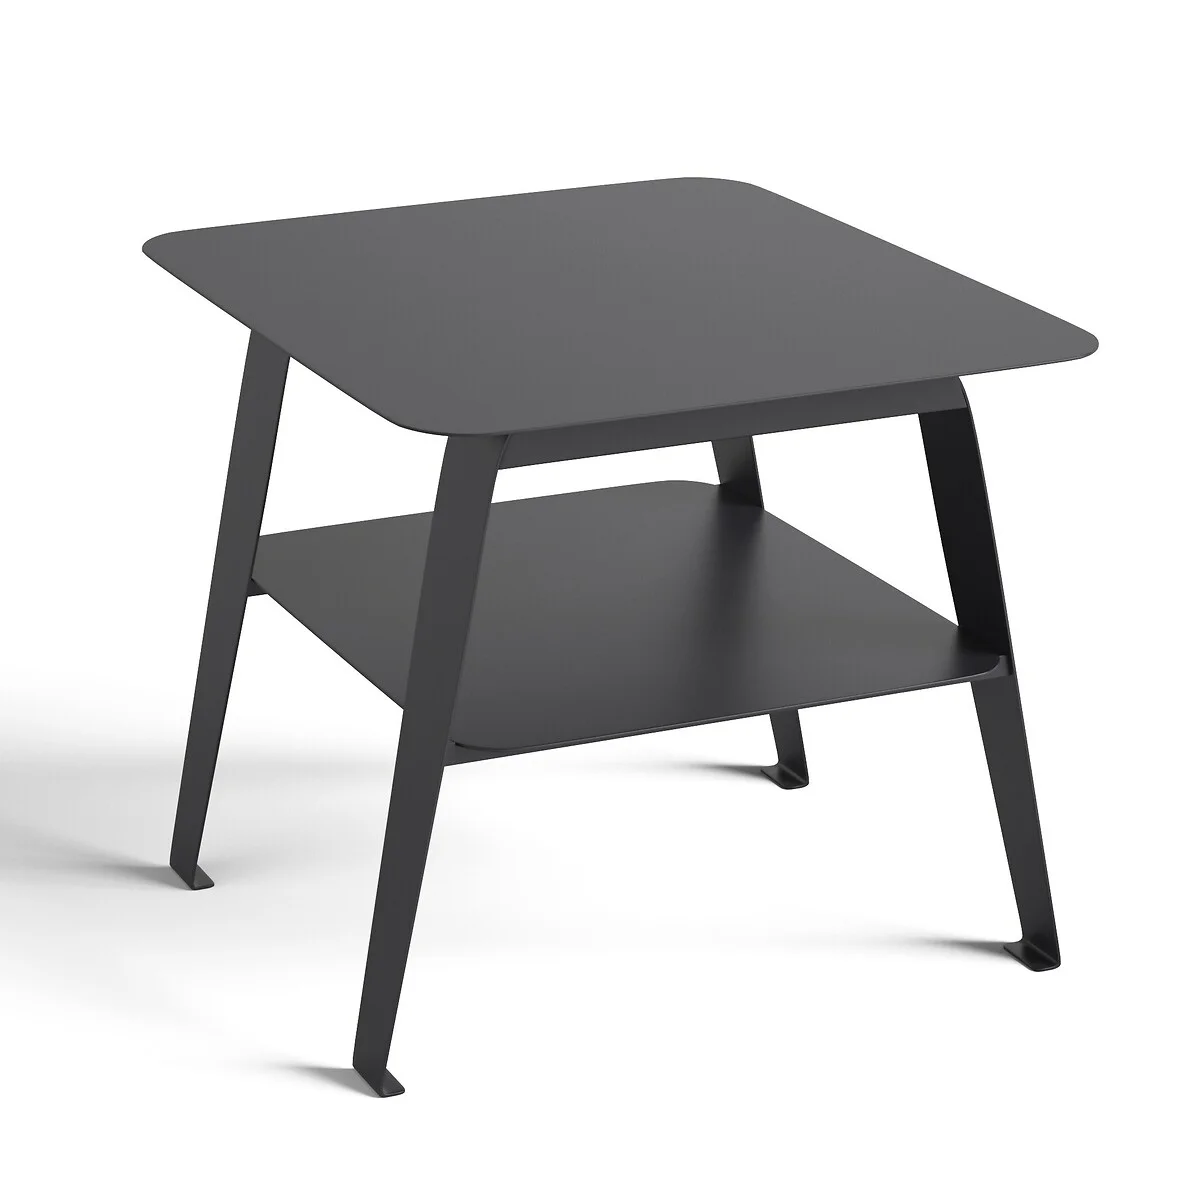 Een praktische bijzettafel met twee tafelbladen: dat is de Hiba van La Redoute Interieurs.